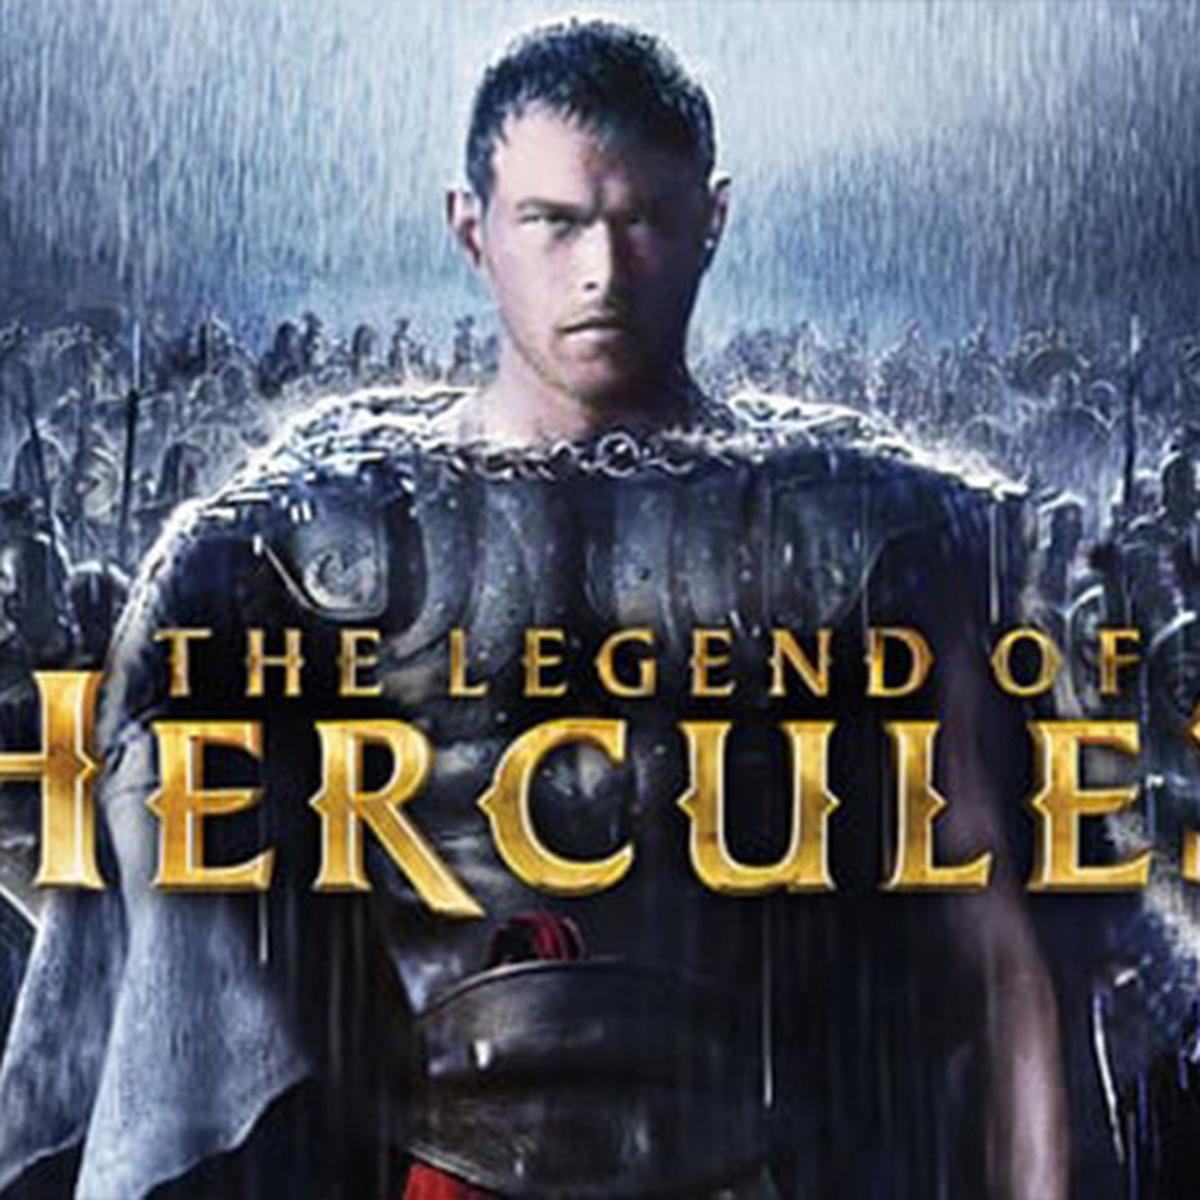 he_Legend_of_Hercules